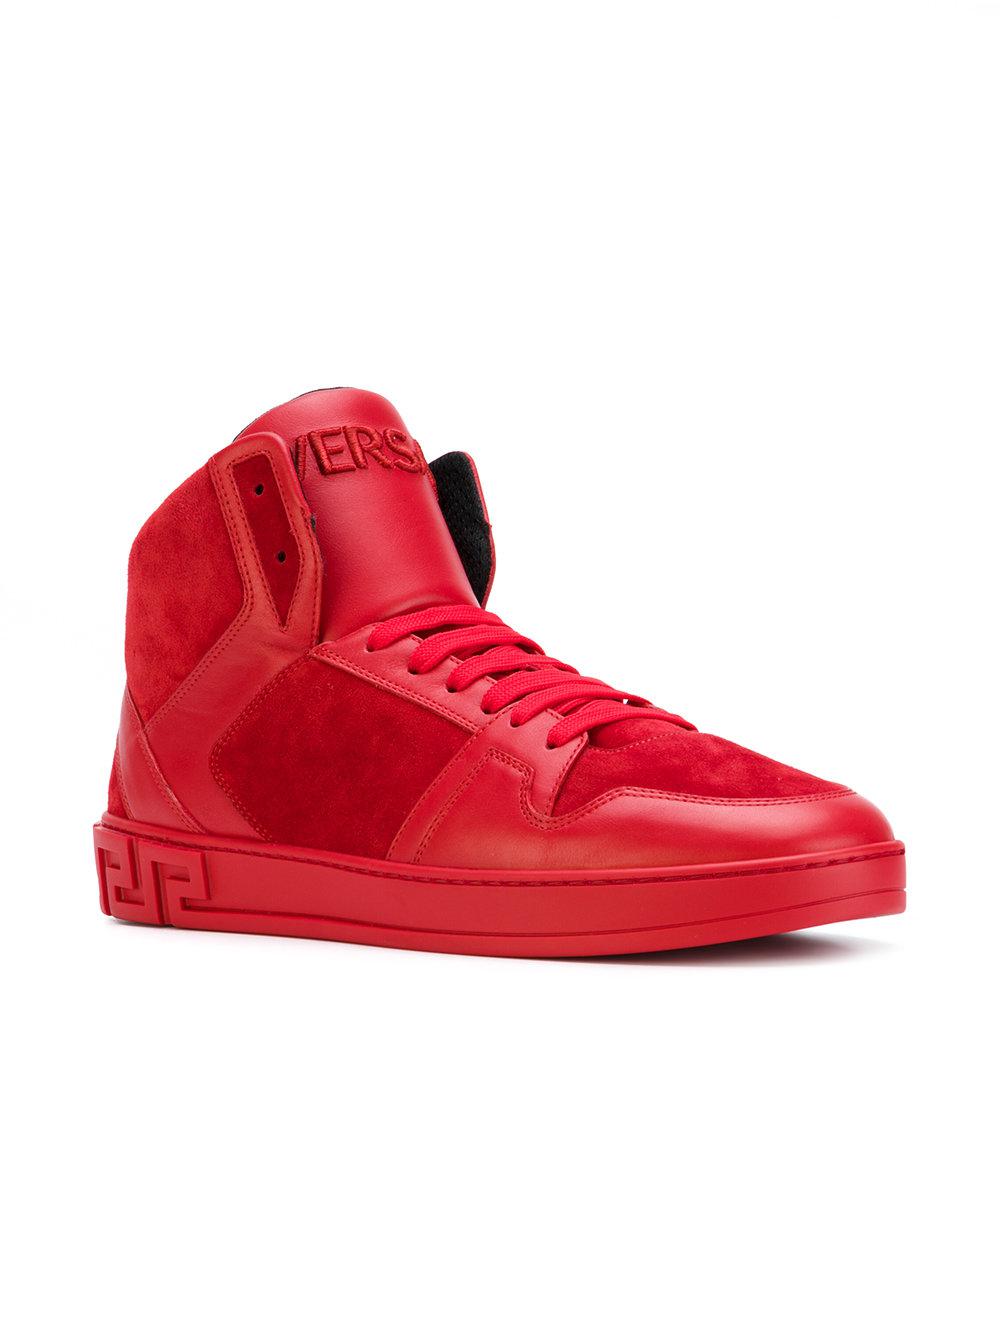 Versace Greek Key High-top Sneakers in Red for Men - Lyst